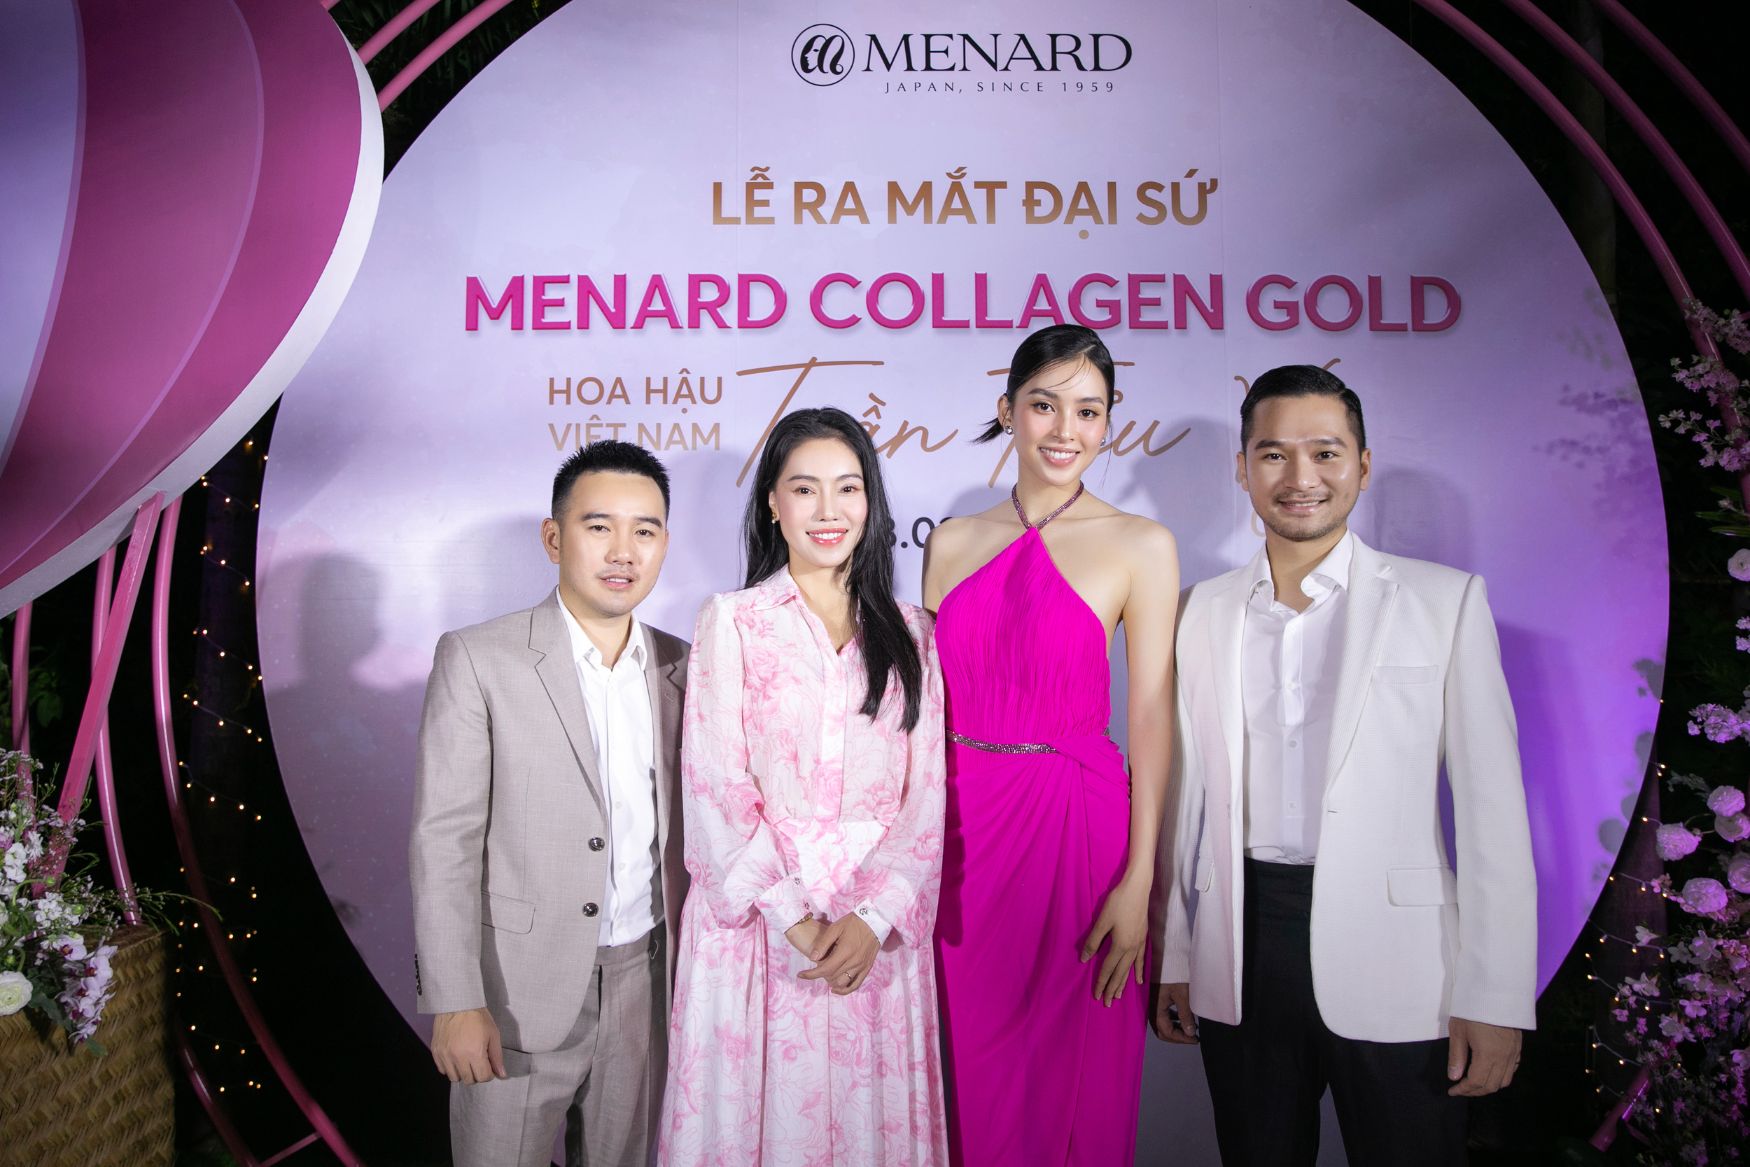 tiểu vy menard 2 Hoa hậu Tiểu Vy trở thành Đại sứ của sản phẩm cao cấp Menard Collagen Gold